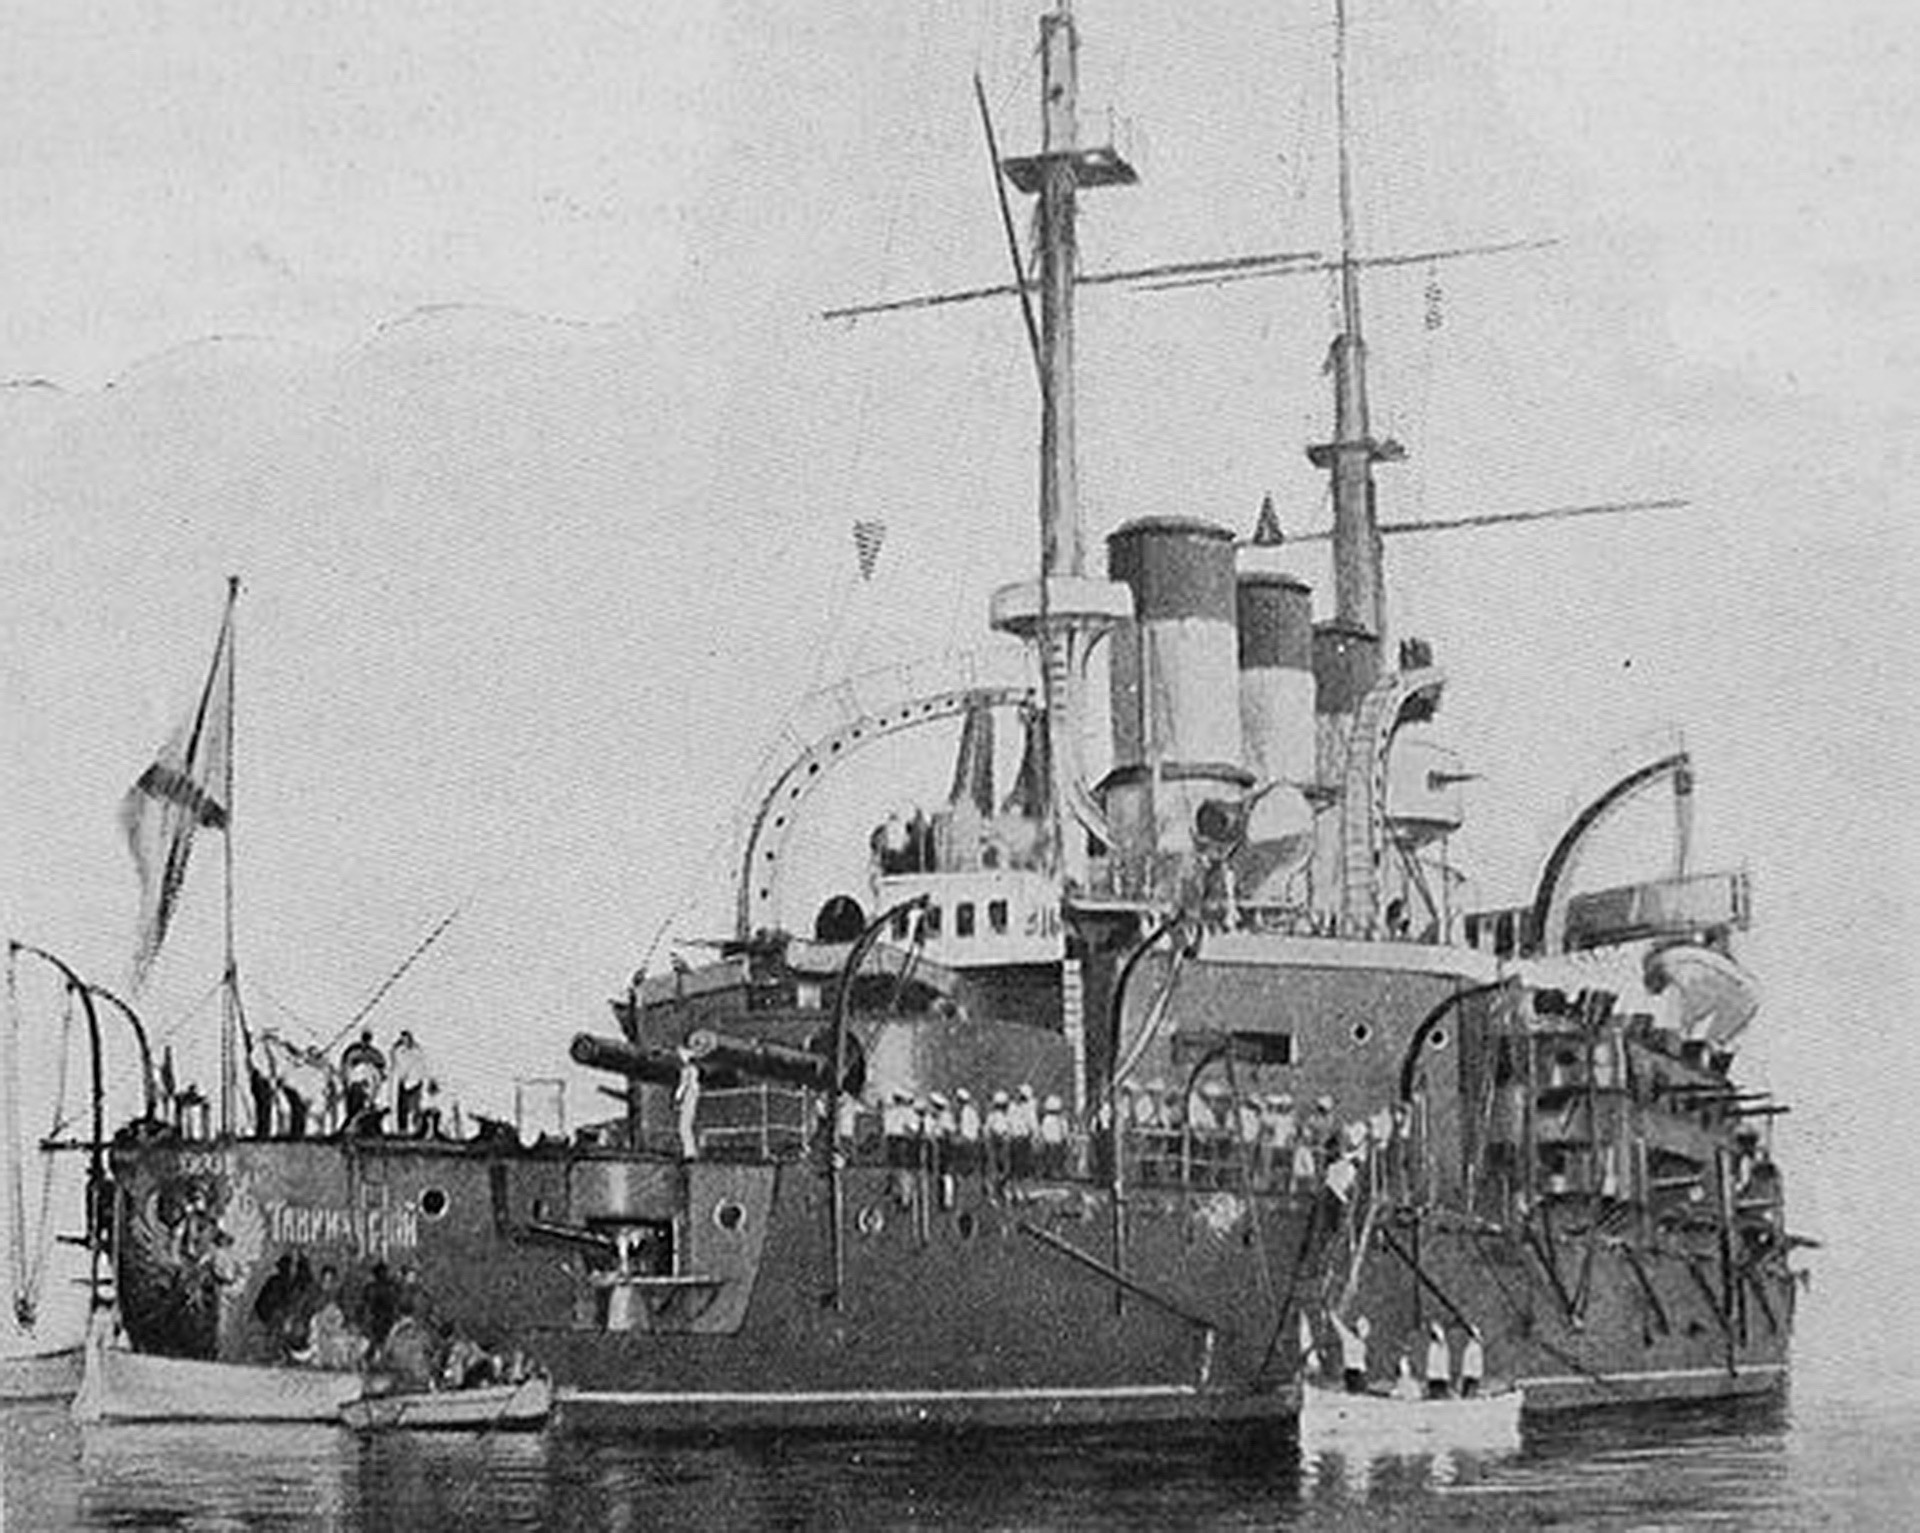  戦艦ポチョムキン＝タヴリーチェスキー公、コンスタンツァ港、1905年7月